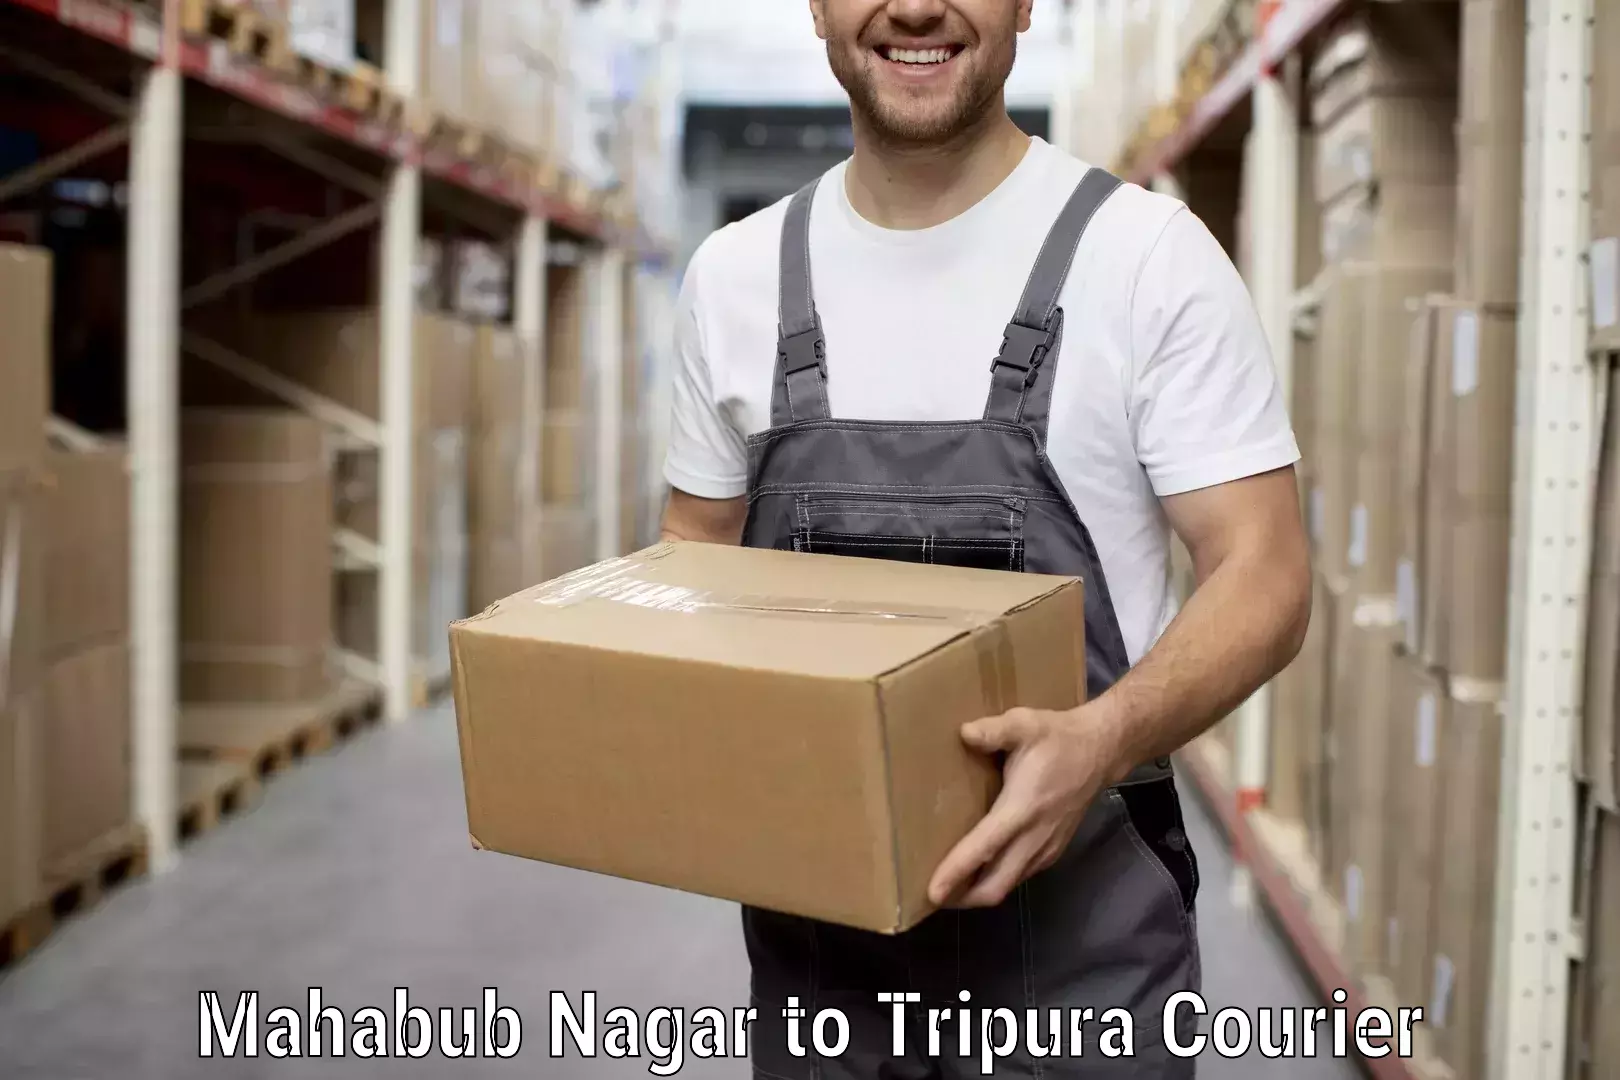 Quality moving company Mahabub Nagar to Udaipur Tripura